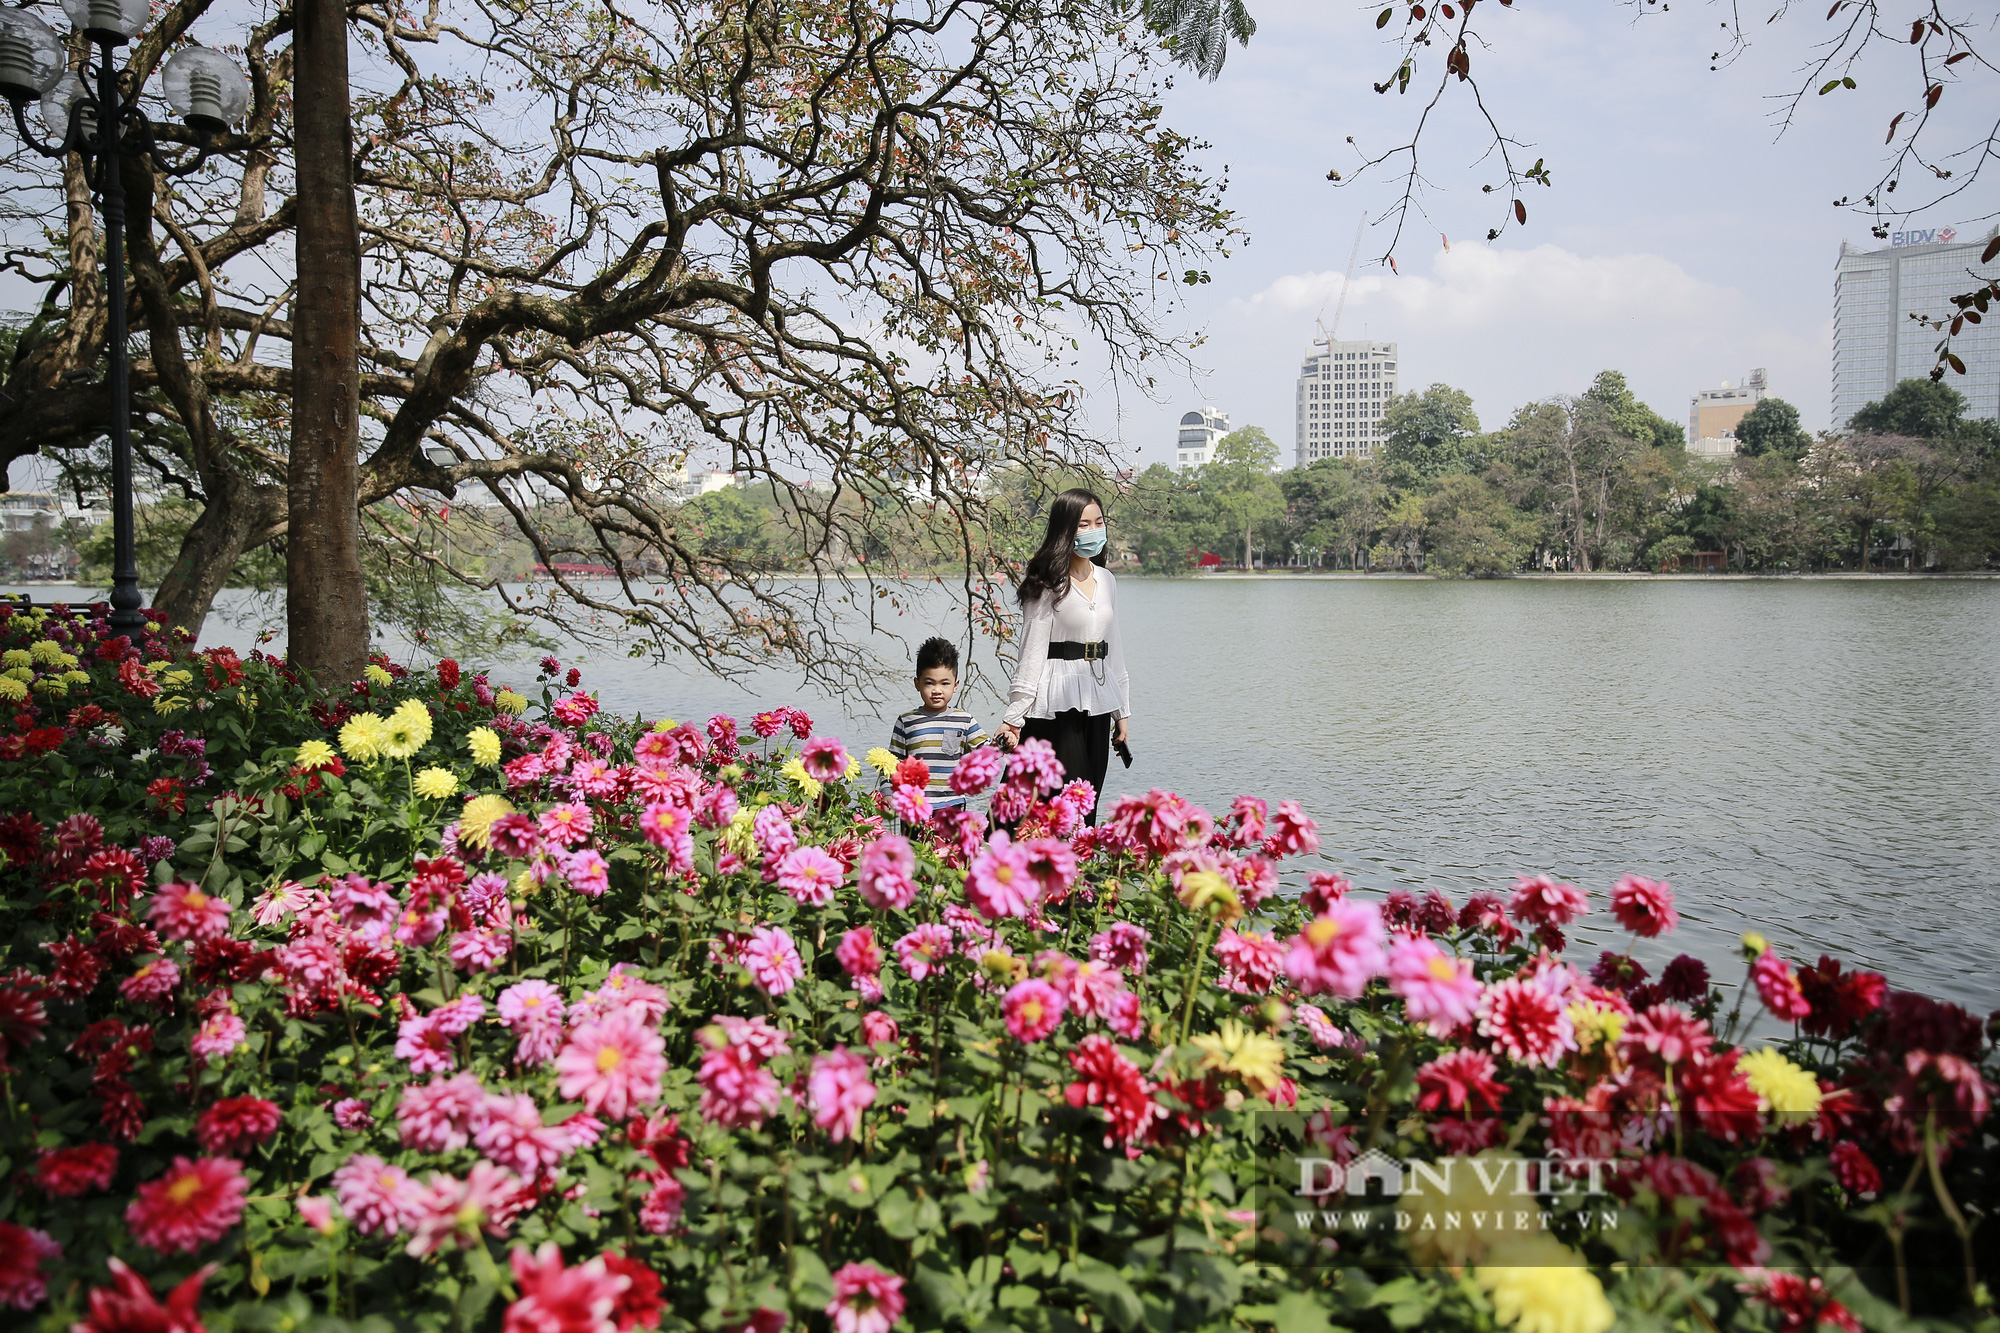 Thưởng lãm sắc hoa đẹp miên man bên hồ Hoàn Kiếm - Ảnh 1.